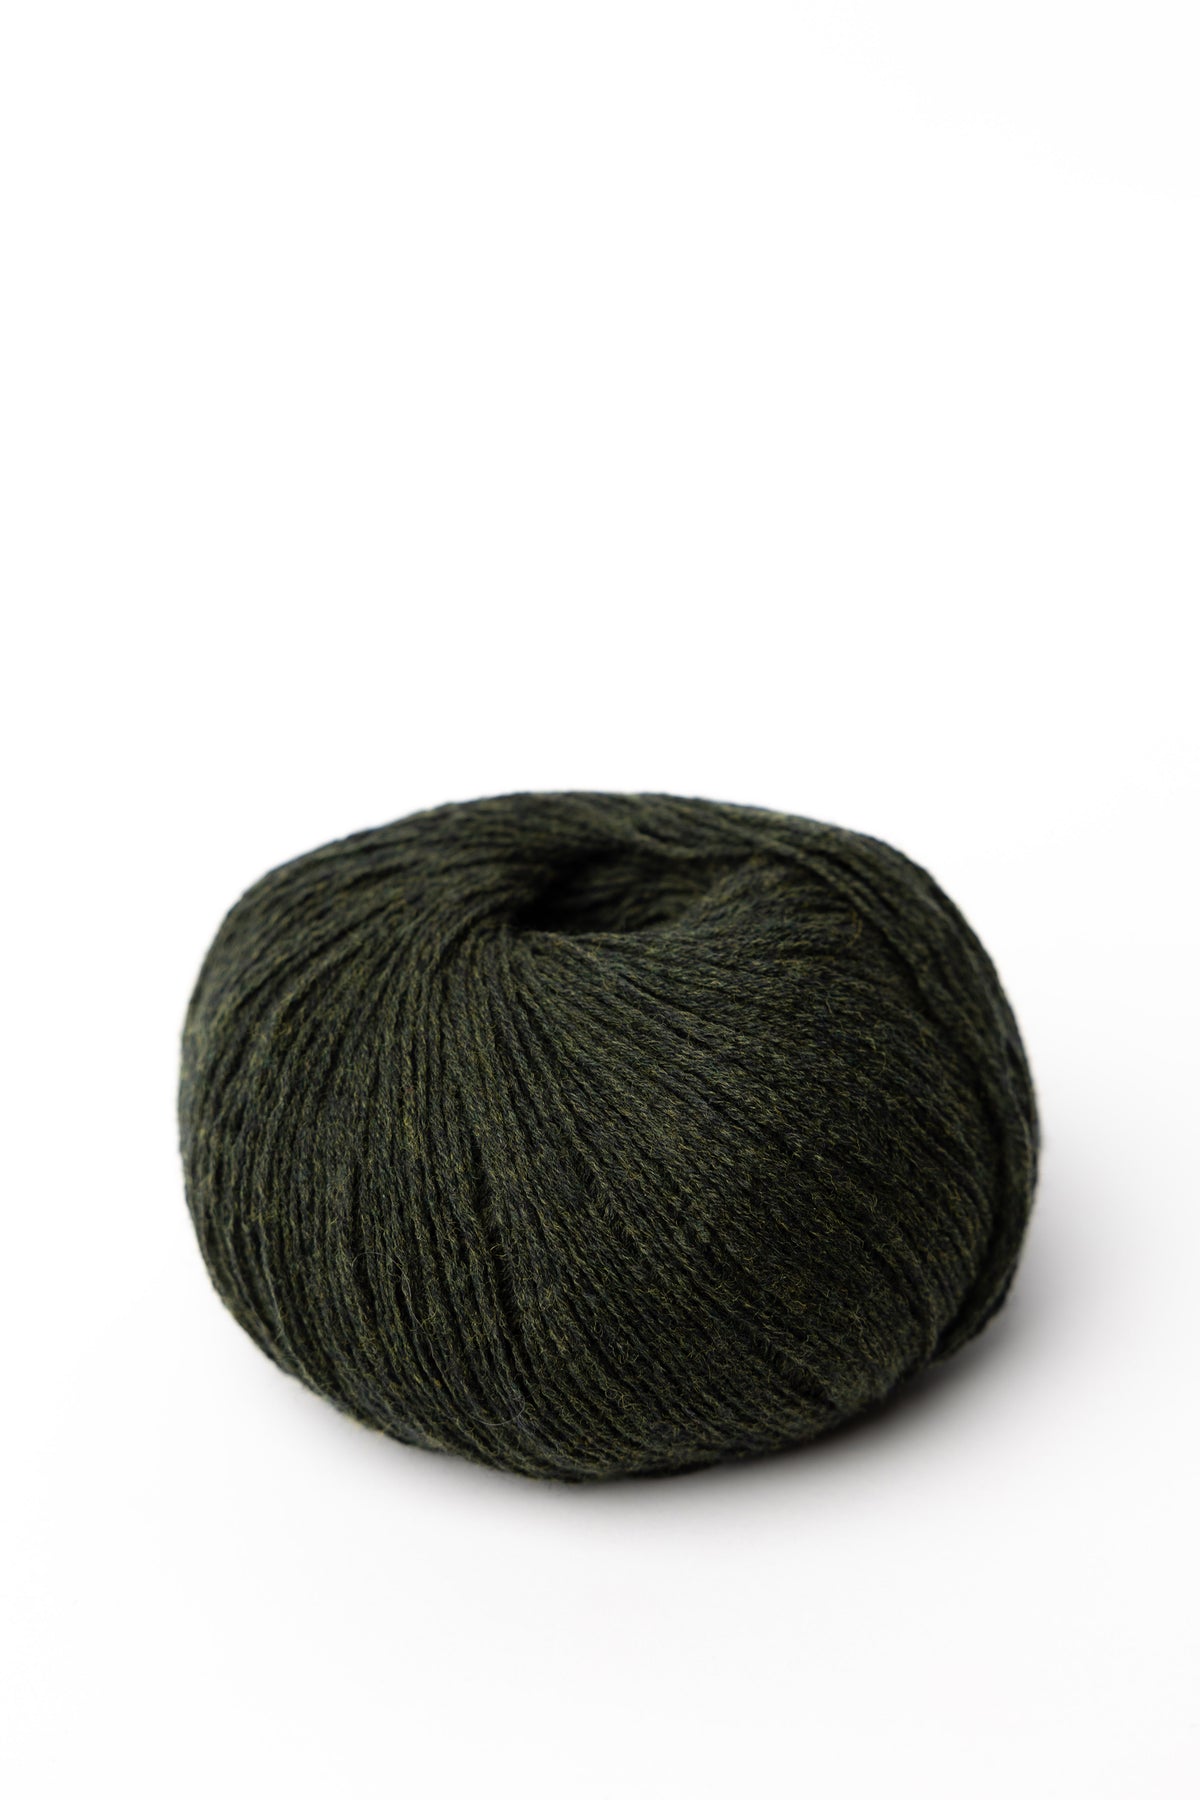 Soft N Smart Dark Green Wool - Dark Green Wool . shop for Soft N